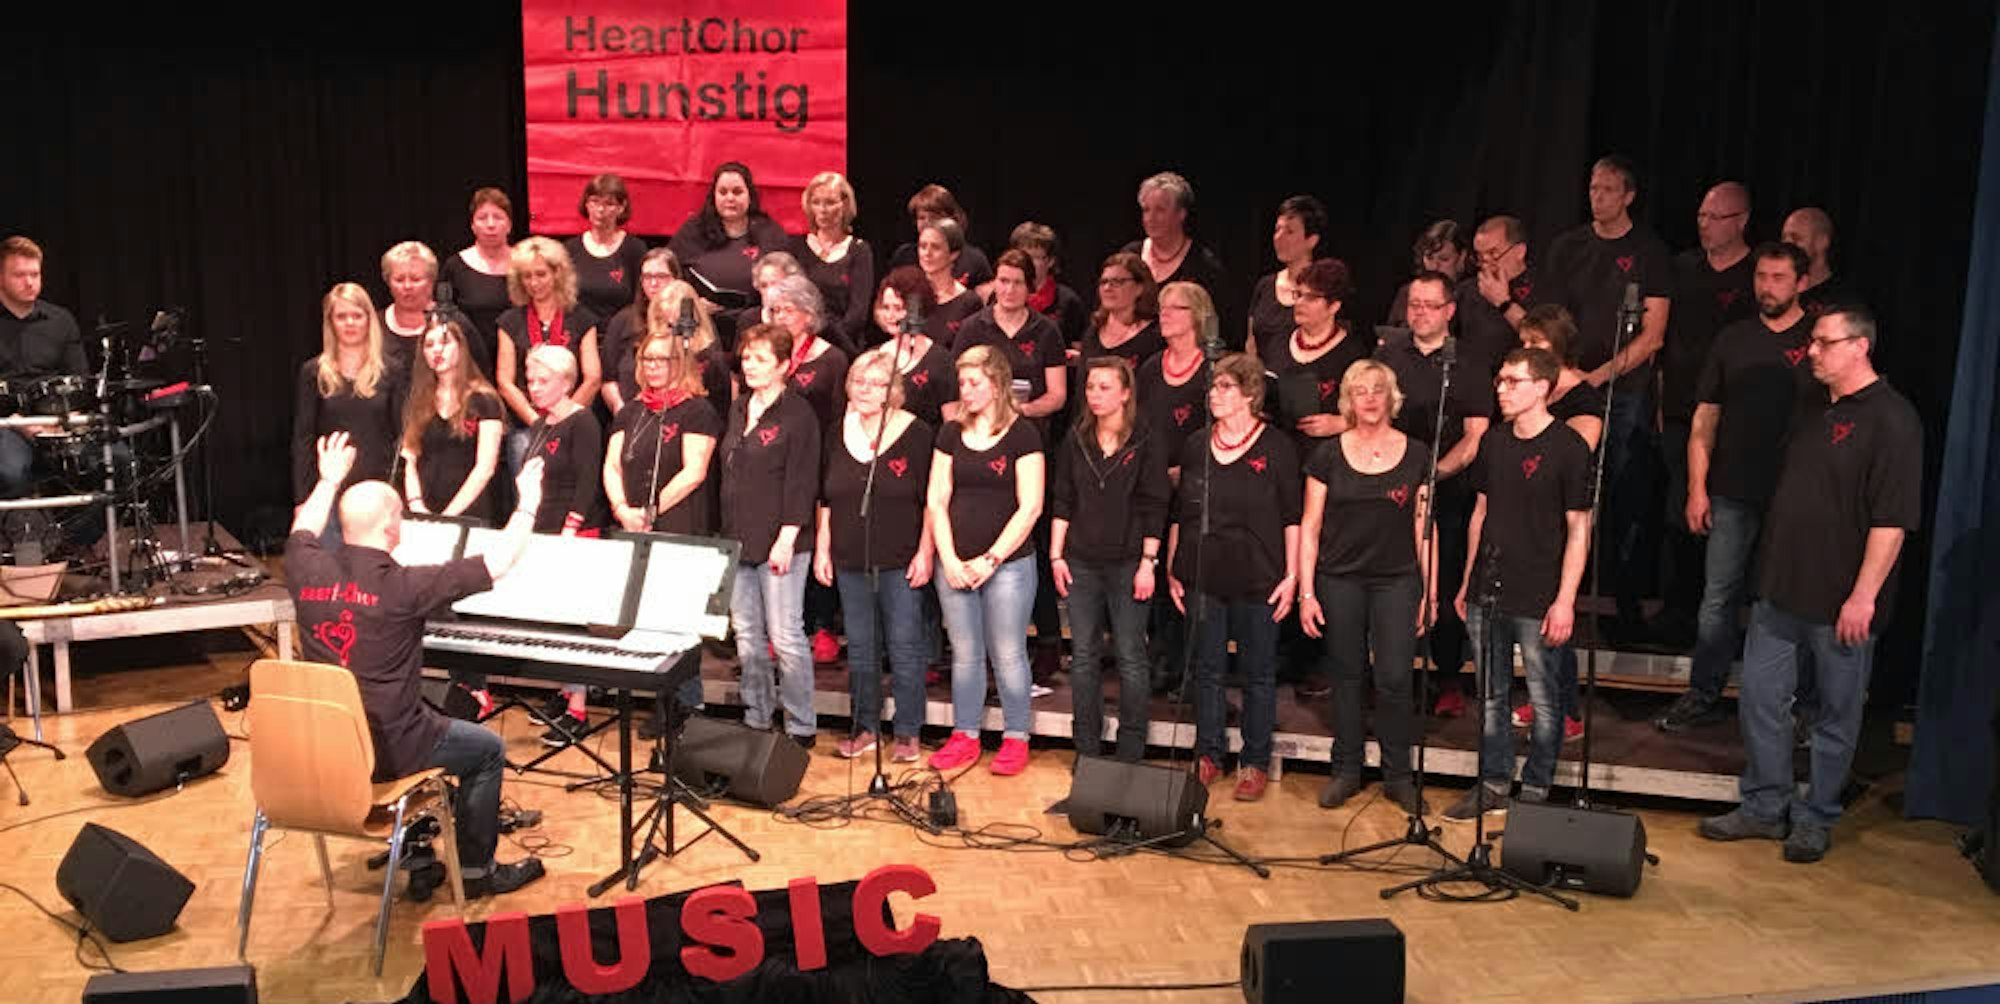 Ein breites Repertoire hat der Heart-Chor aus Hunstig und auch ein Motto: Musik kommt von Herzen.